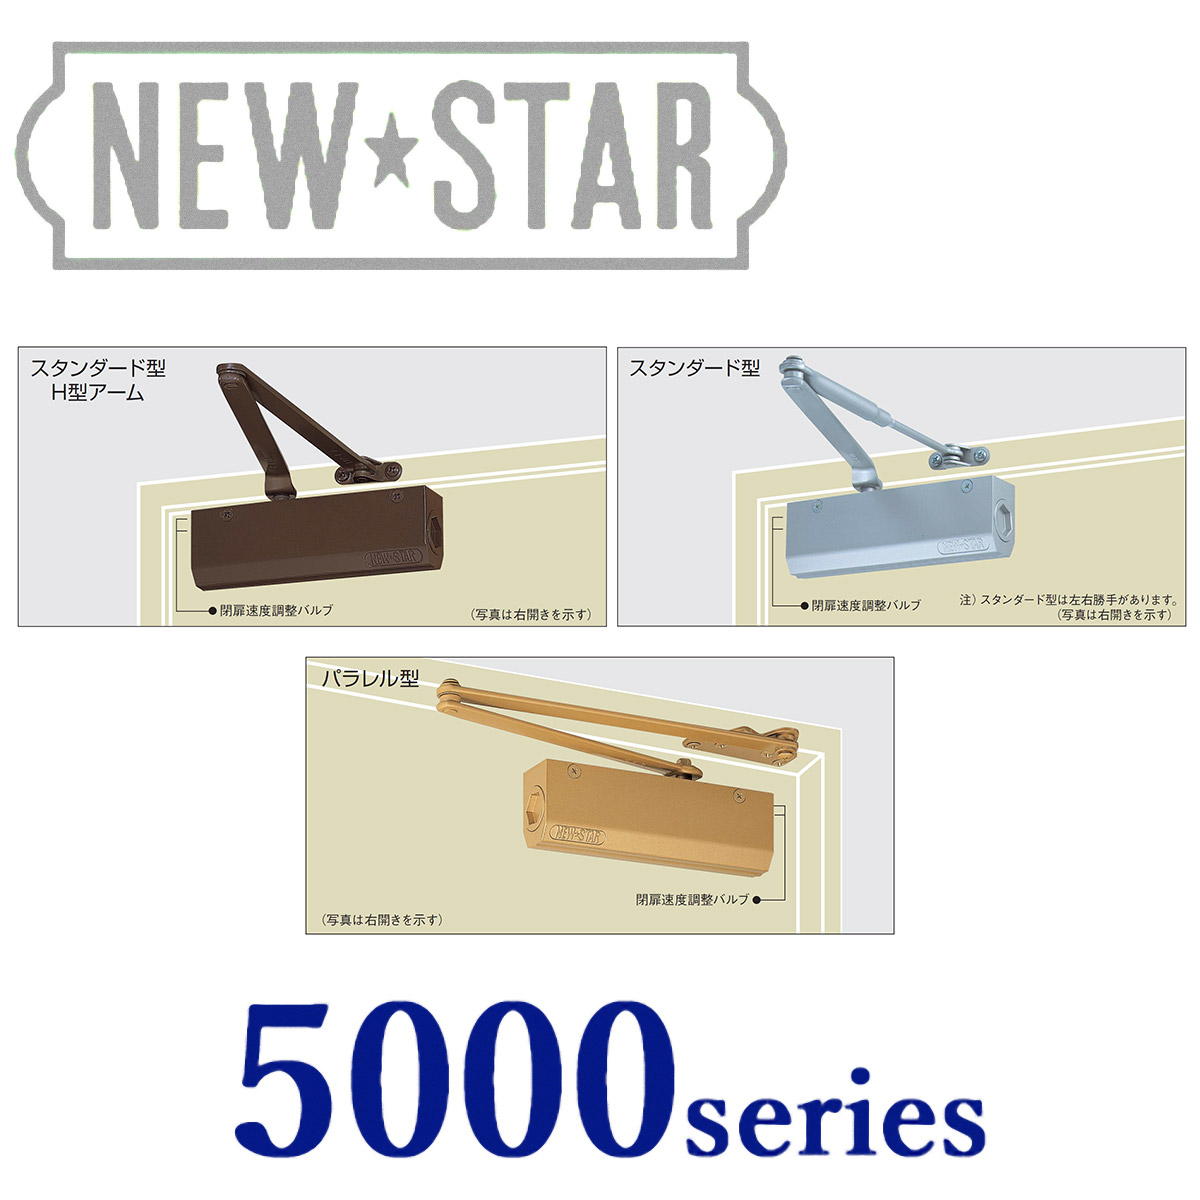 NEW STAR(ニュースター) ドアクローザー5000シリーズ